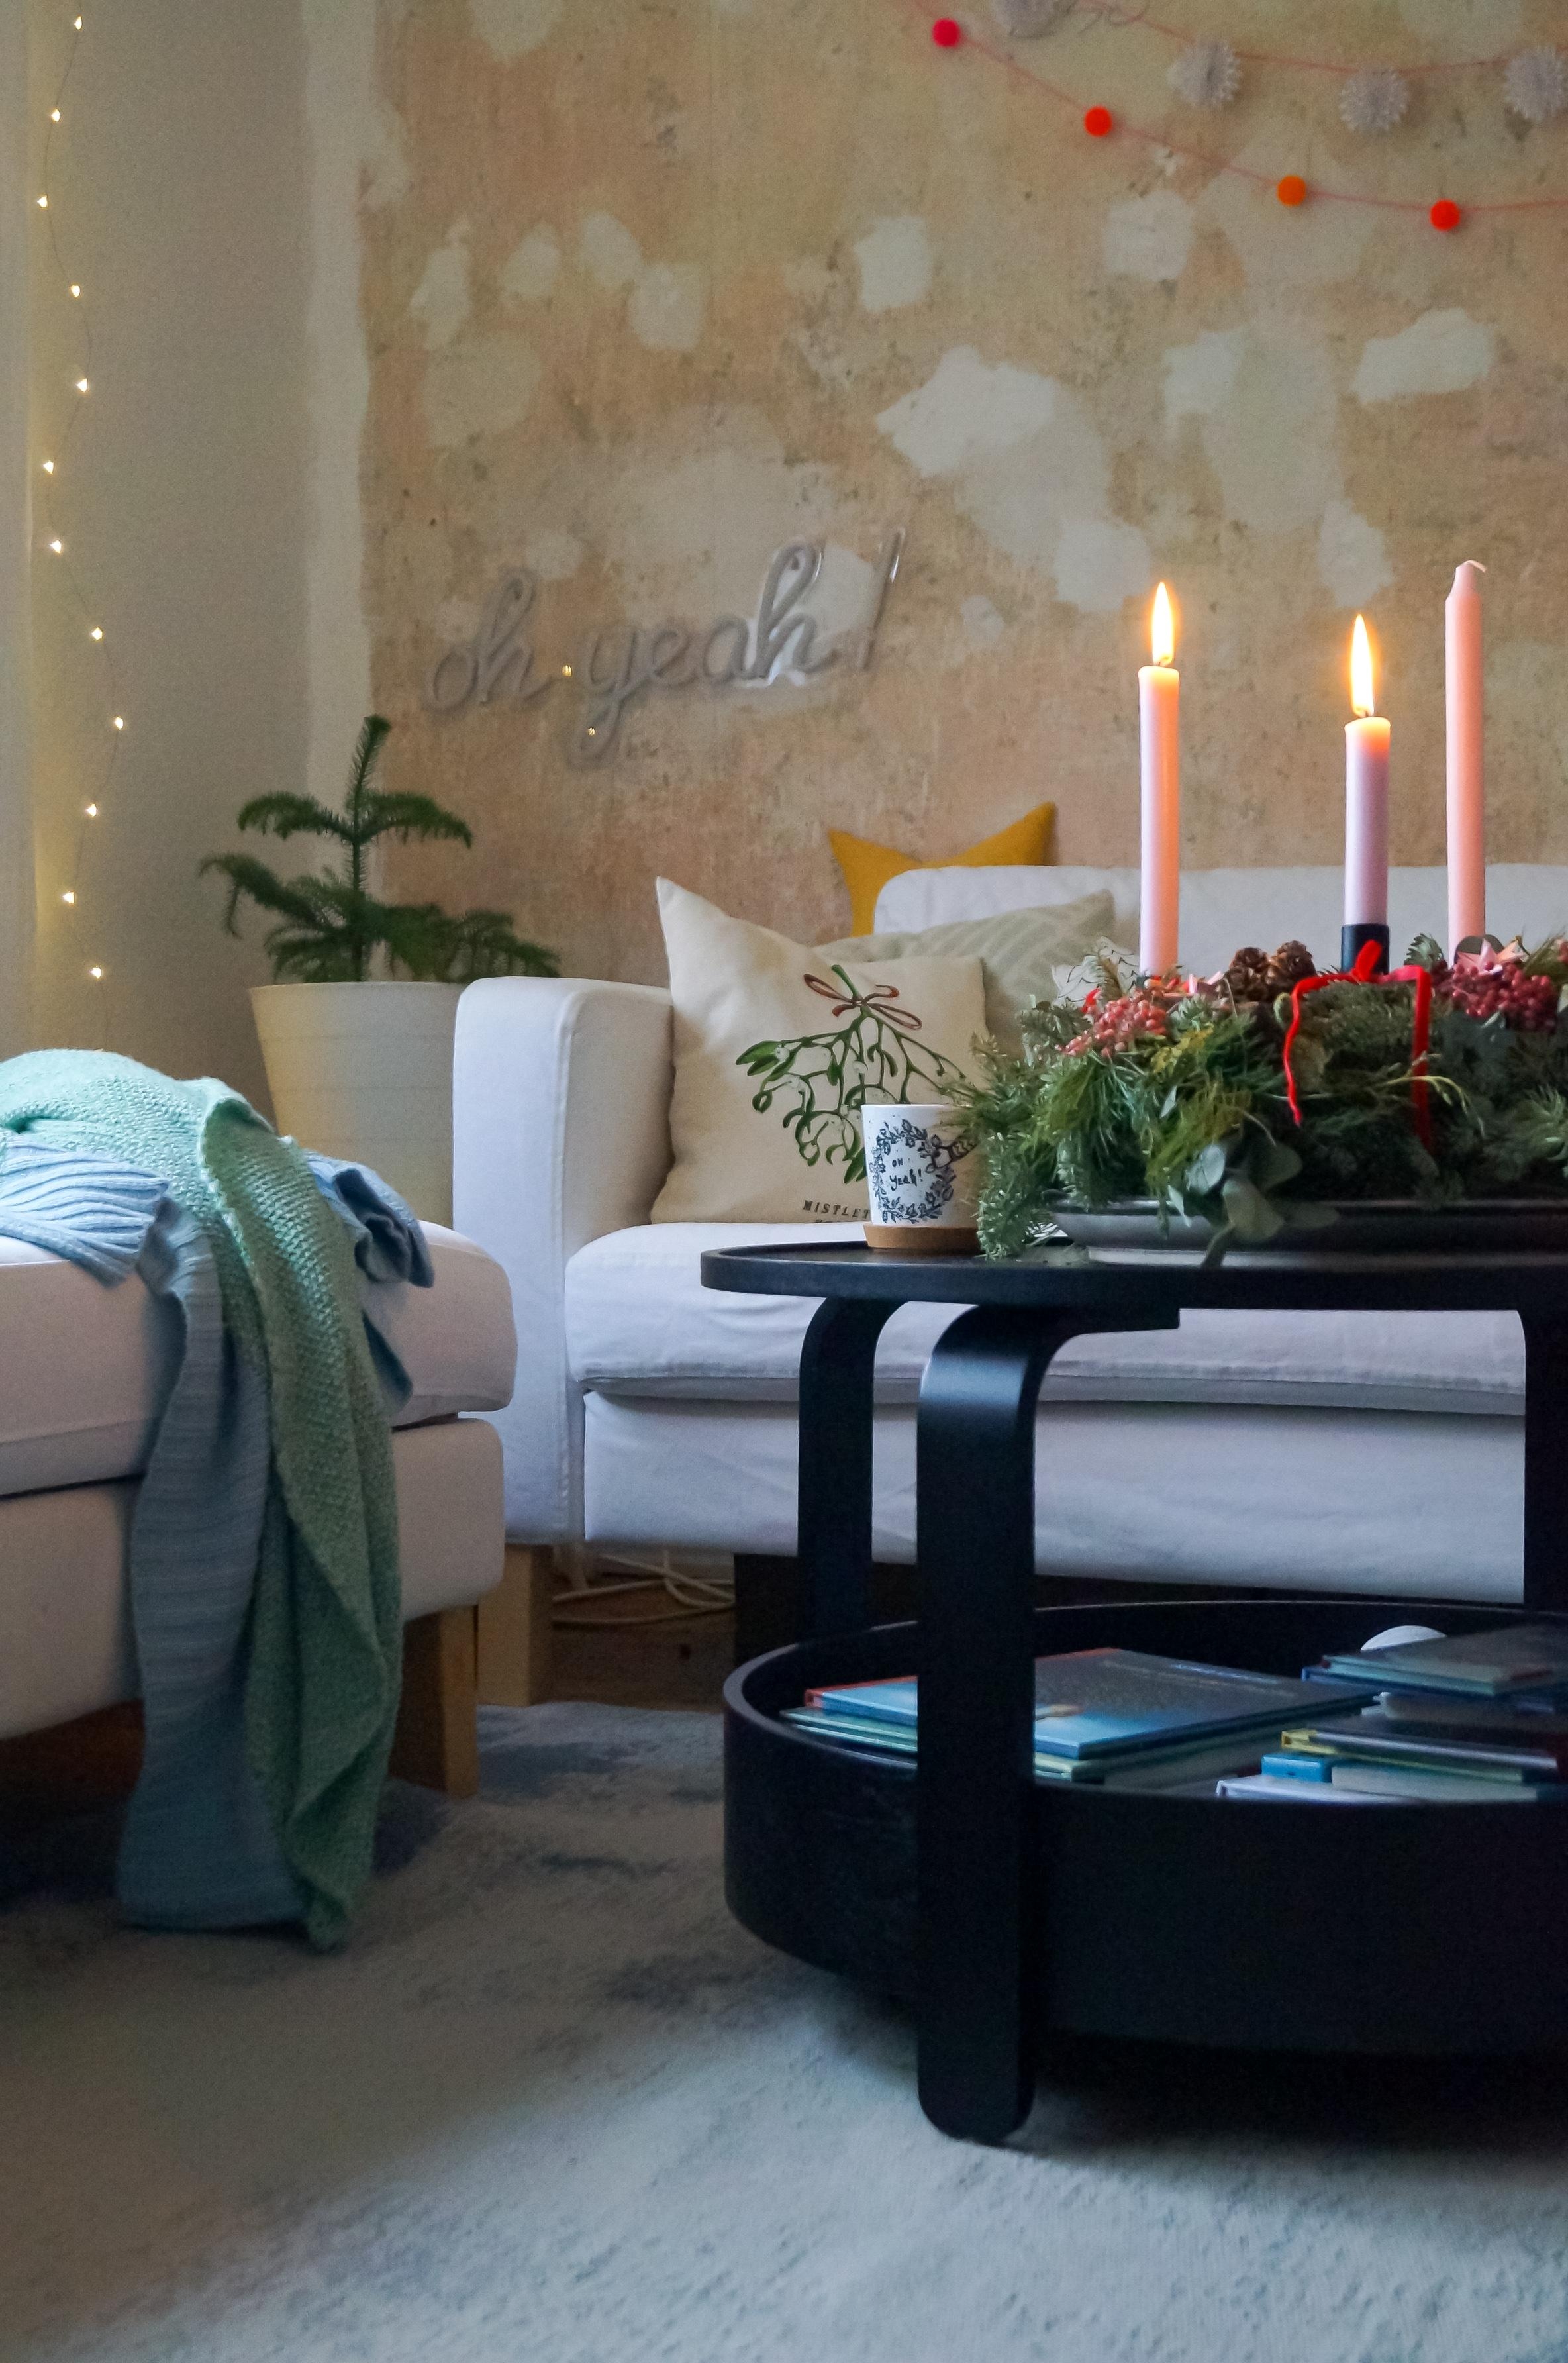 #hyggelige #adventszeit mit #kerzen und #kaffee auf der #couch

#adventskranz #wohnzimmer #detailverliebt 